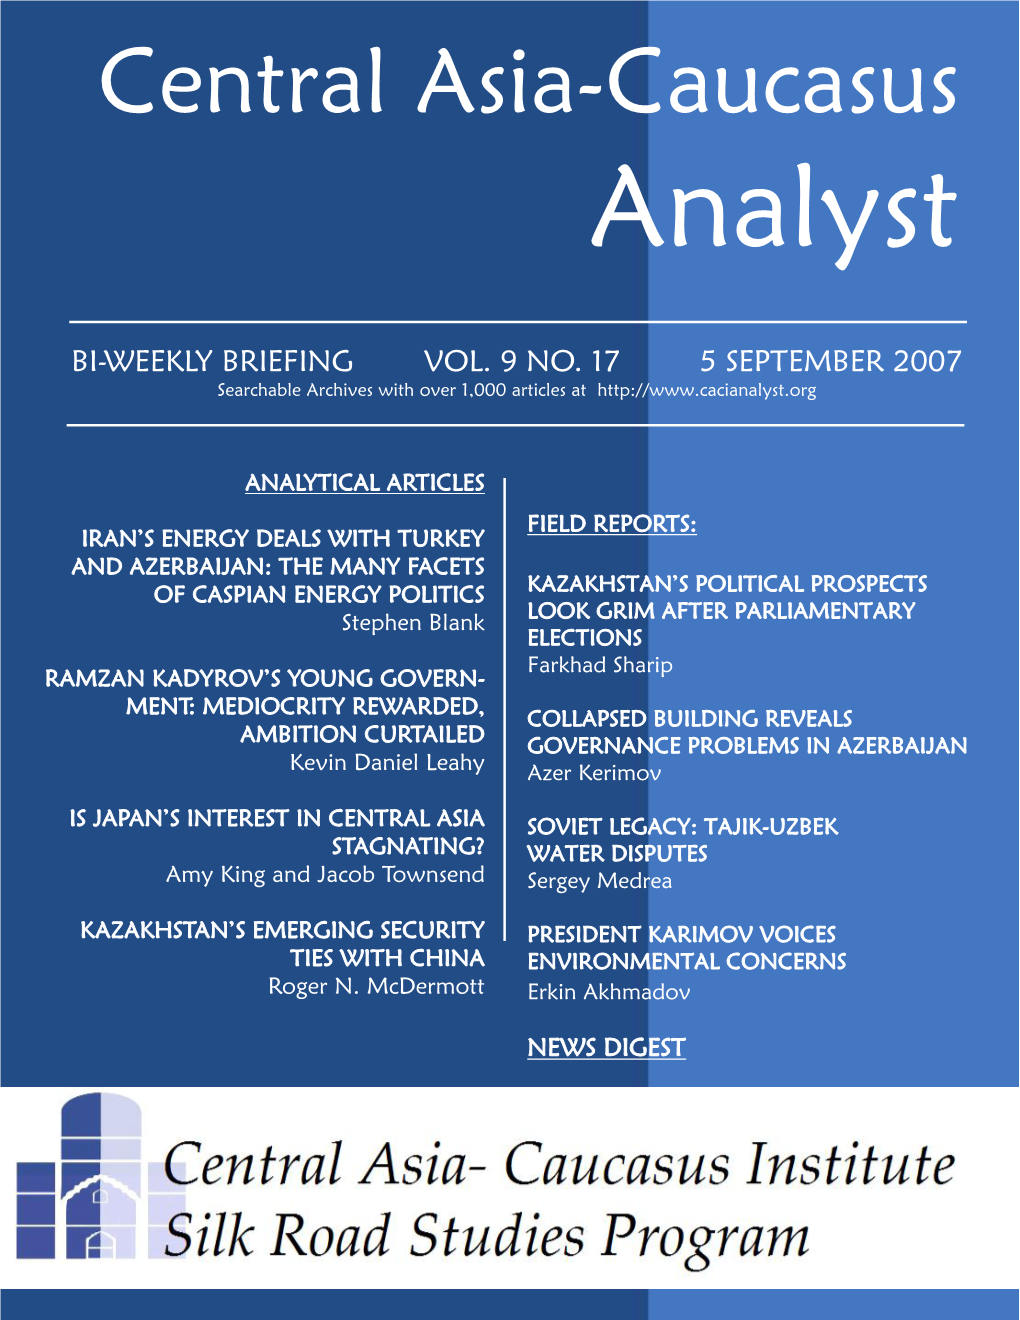 Central Asia-Caucasus Analyst Vol 9, No 17